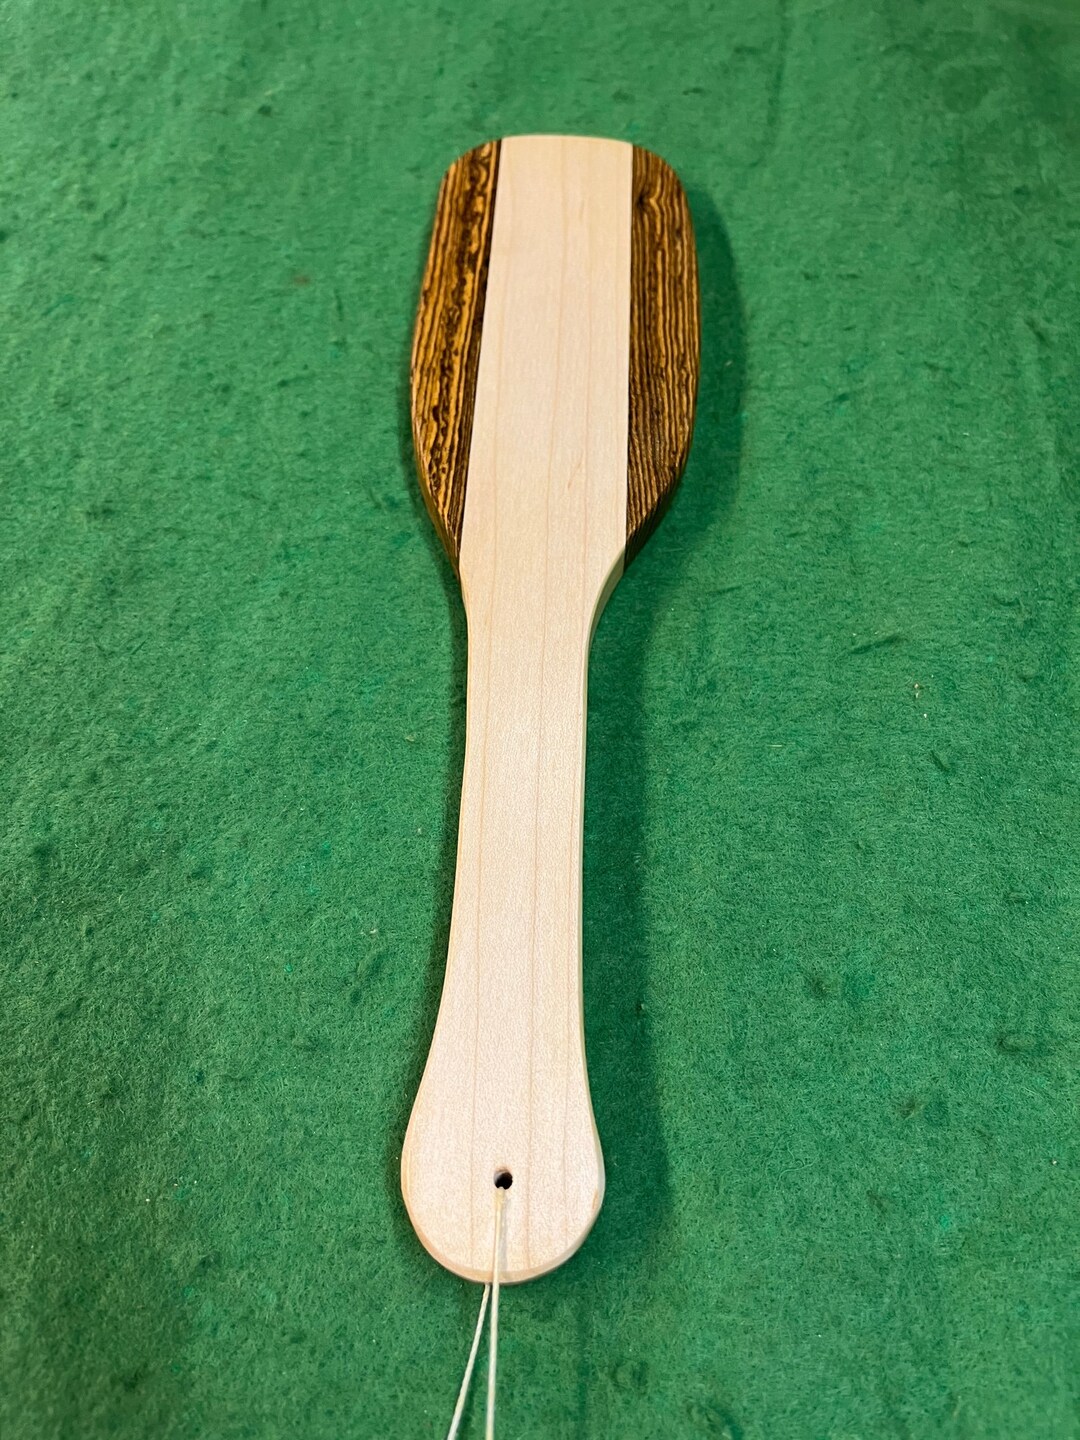 Otk Maple Bacote Hardwood Hairbrush Spanking Paddle Mature Etsy